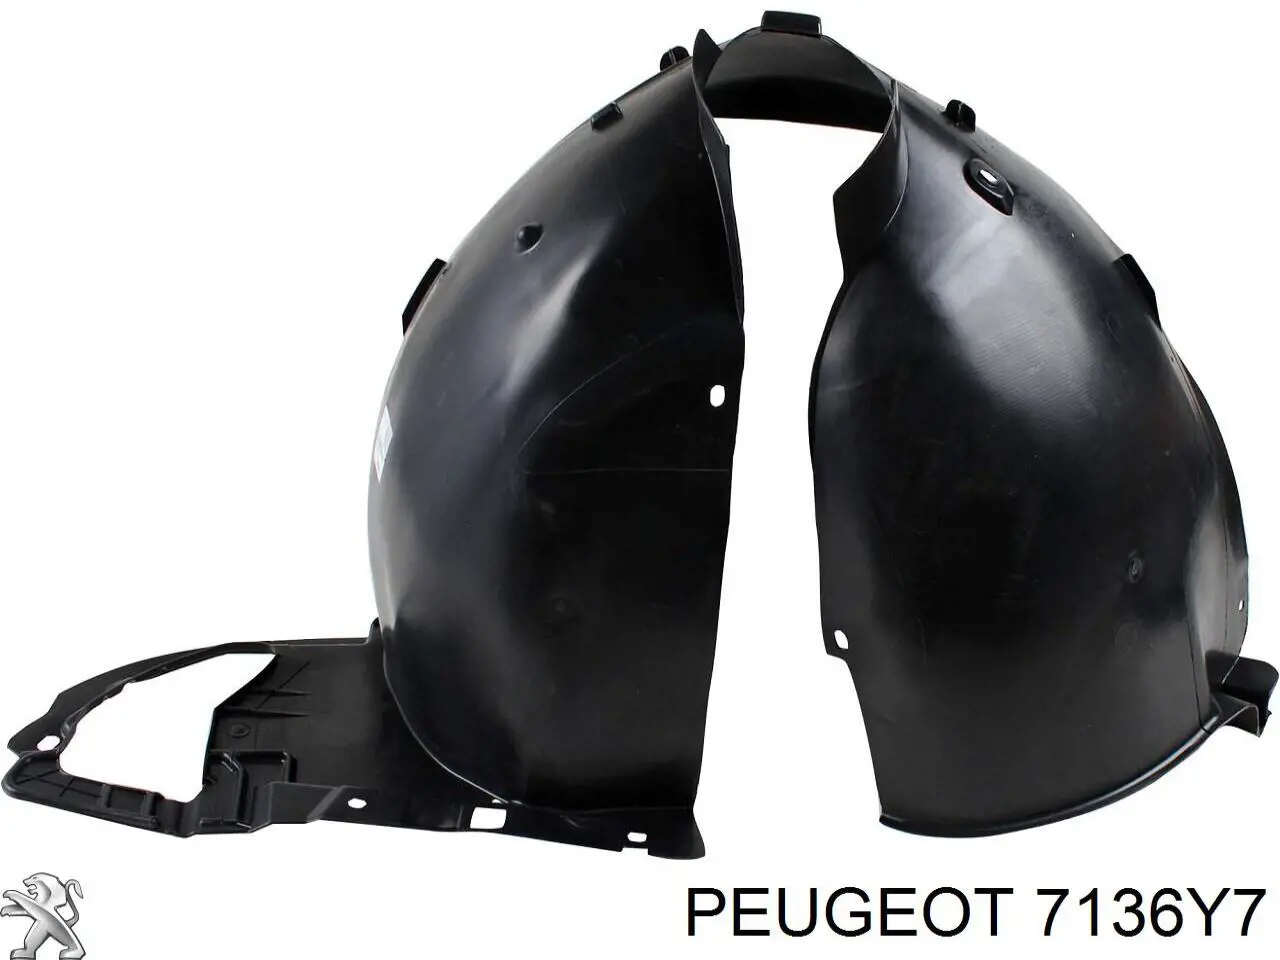 7136Y7 Peugeot/Citroen guarda-barras direito do pára-lama dianteiro